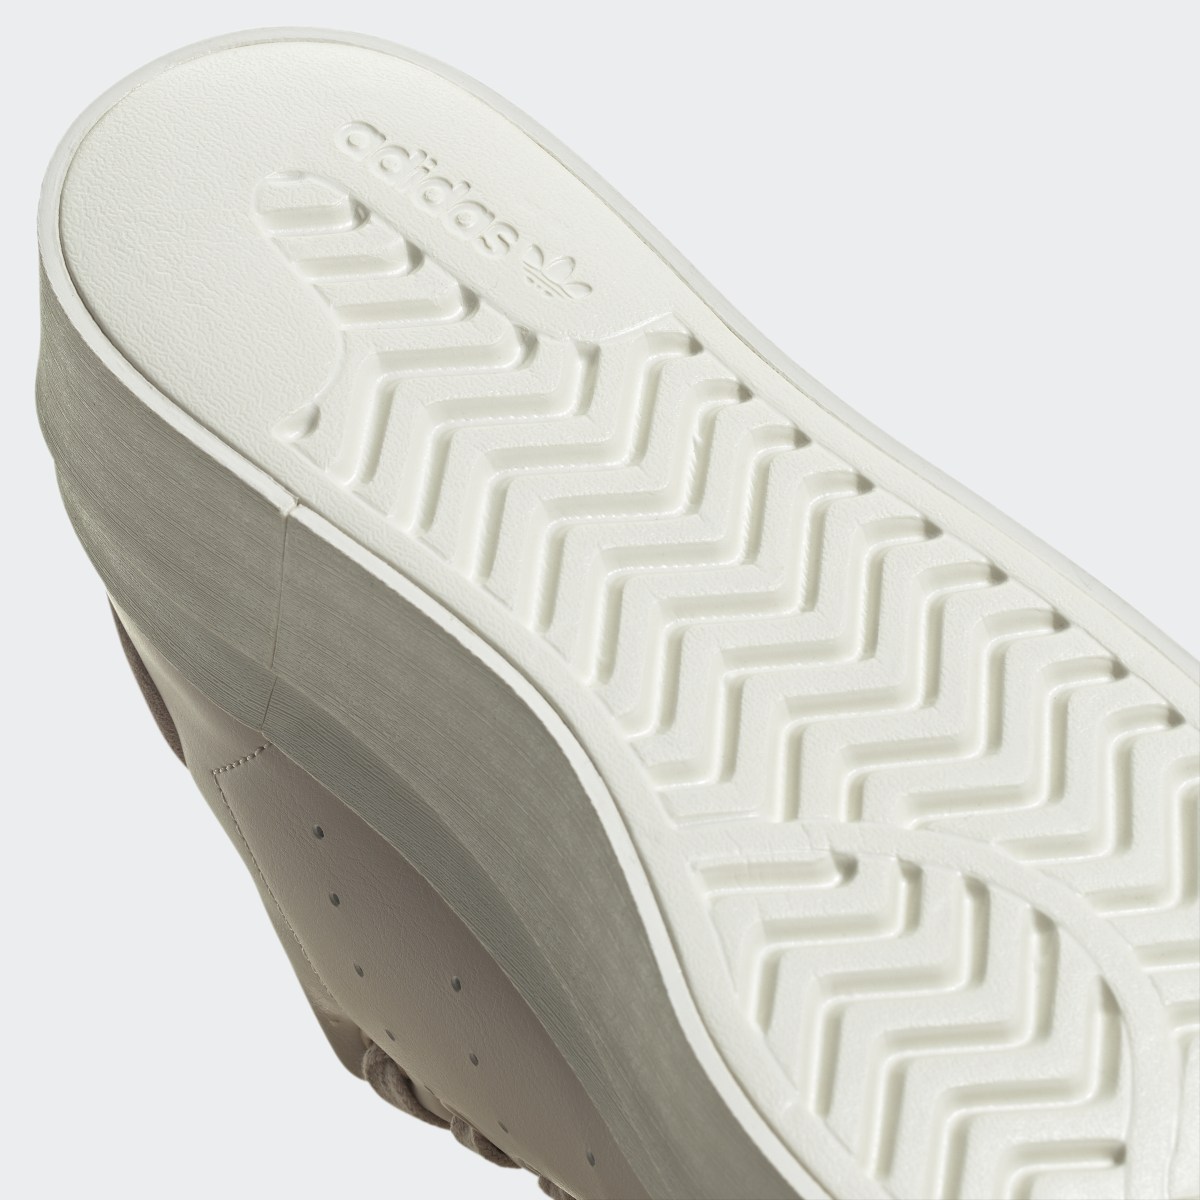 Adidas Stan Smith Bonega Shoes. 5